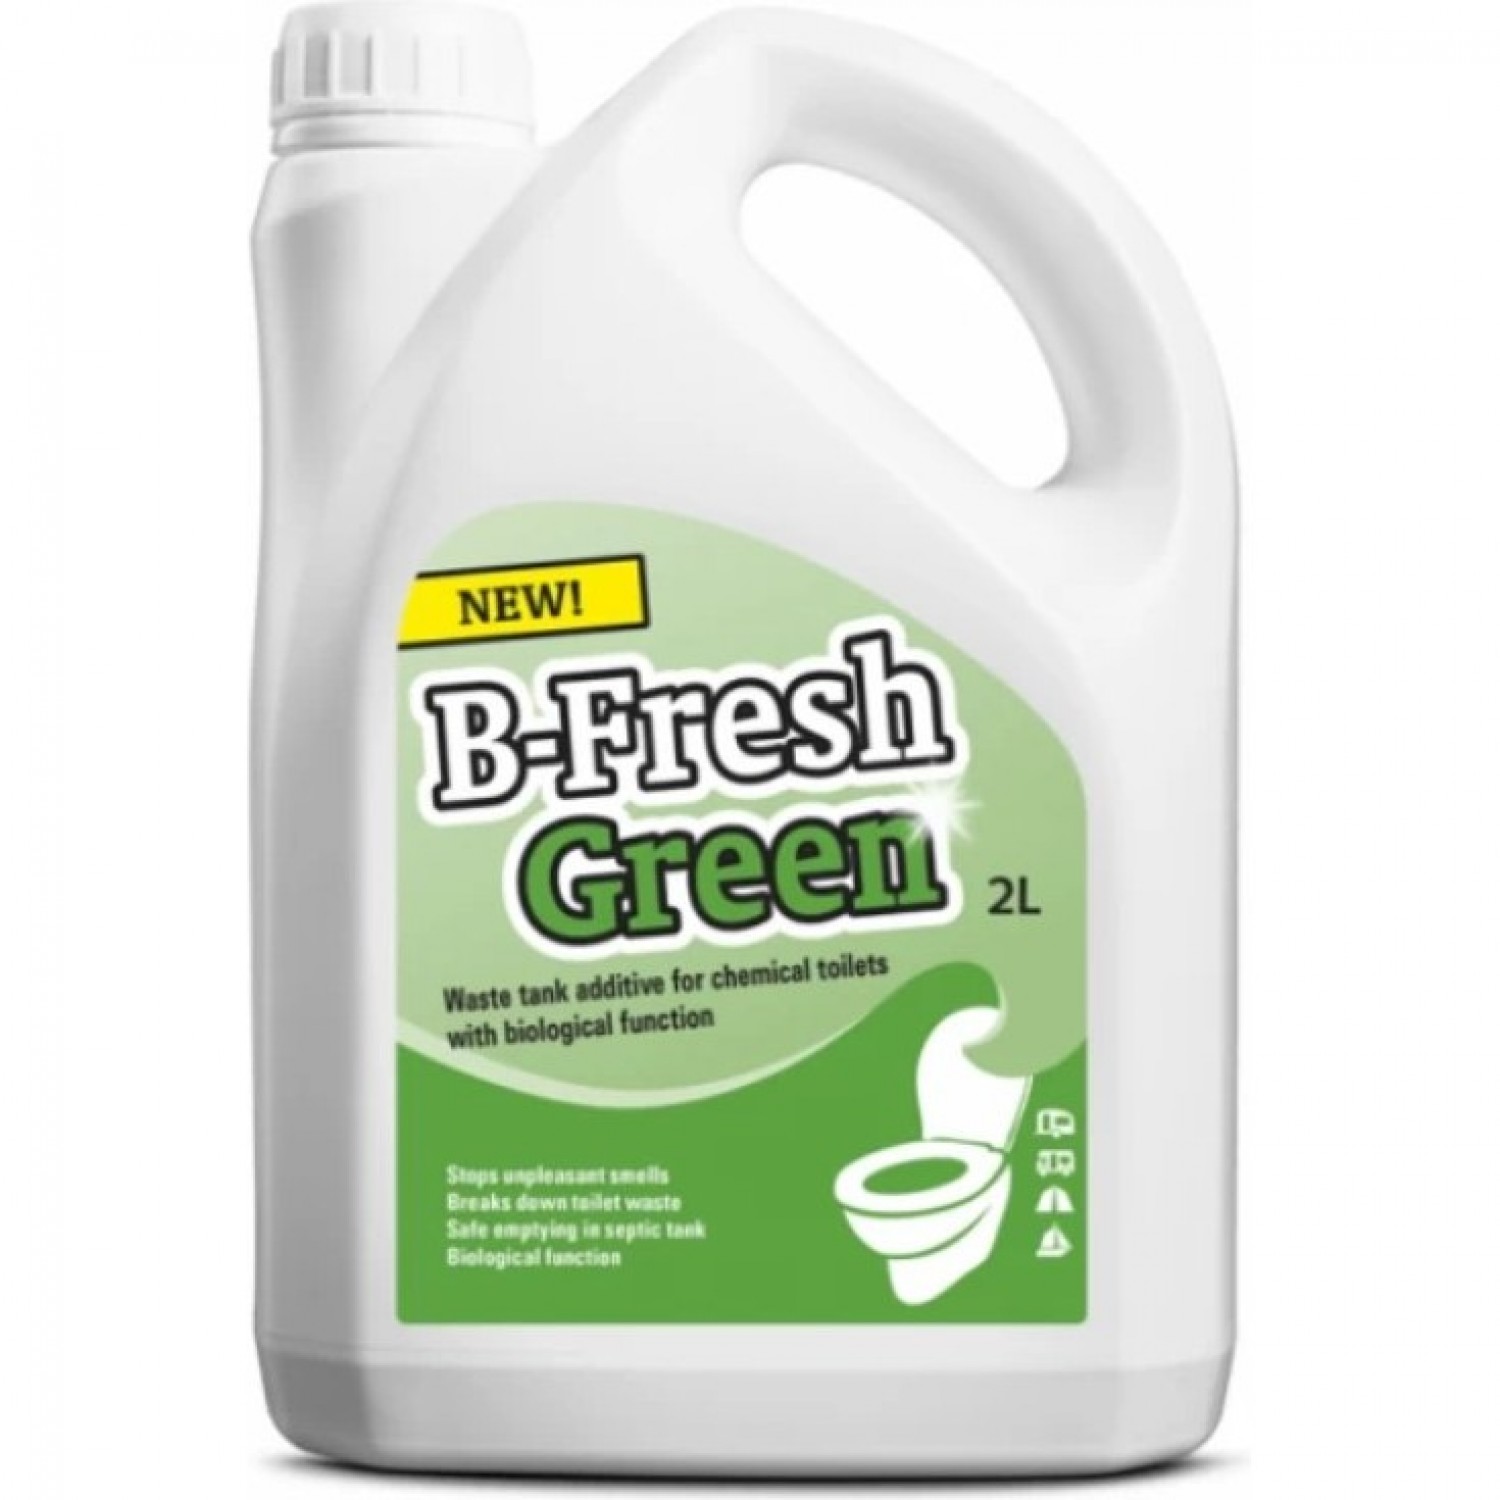 THETFORD B-FRESH GREEN (2 л) 30537BJ. Купить Жидкость для биотуалета на .